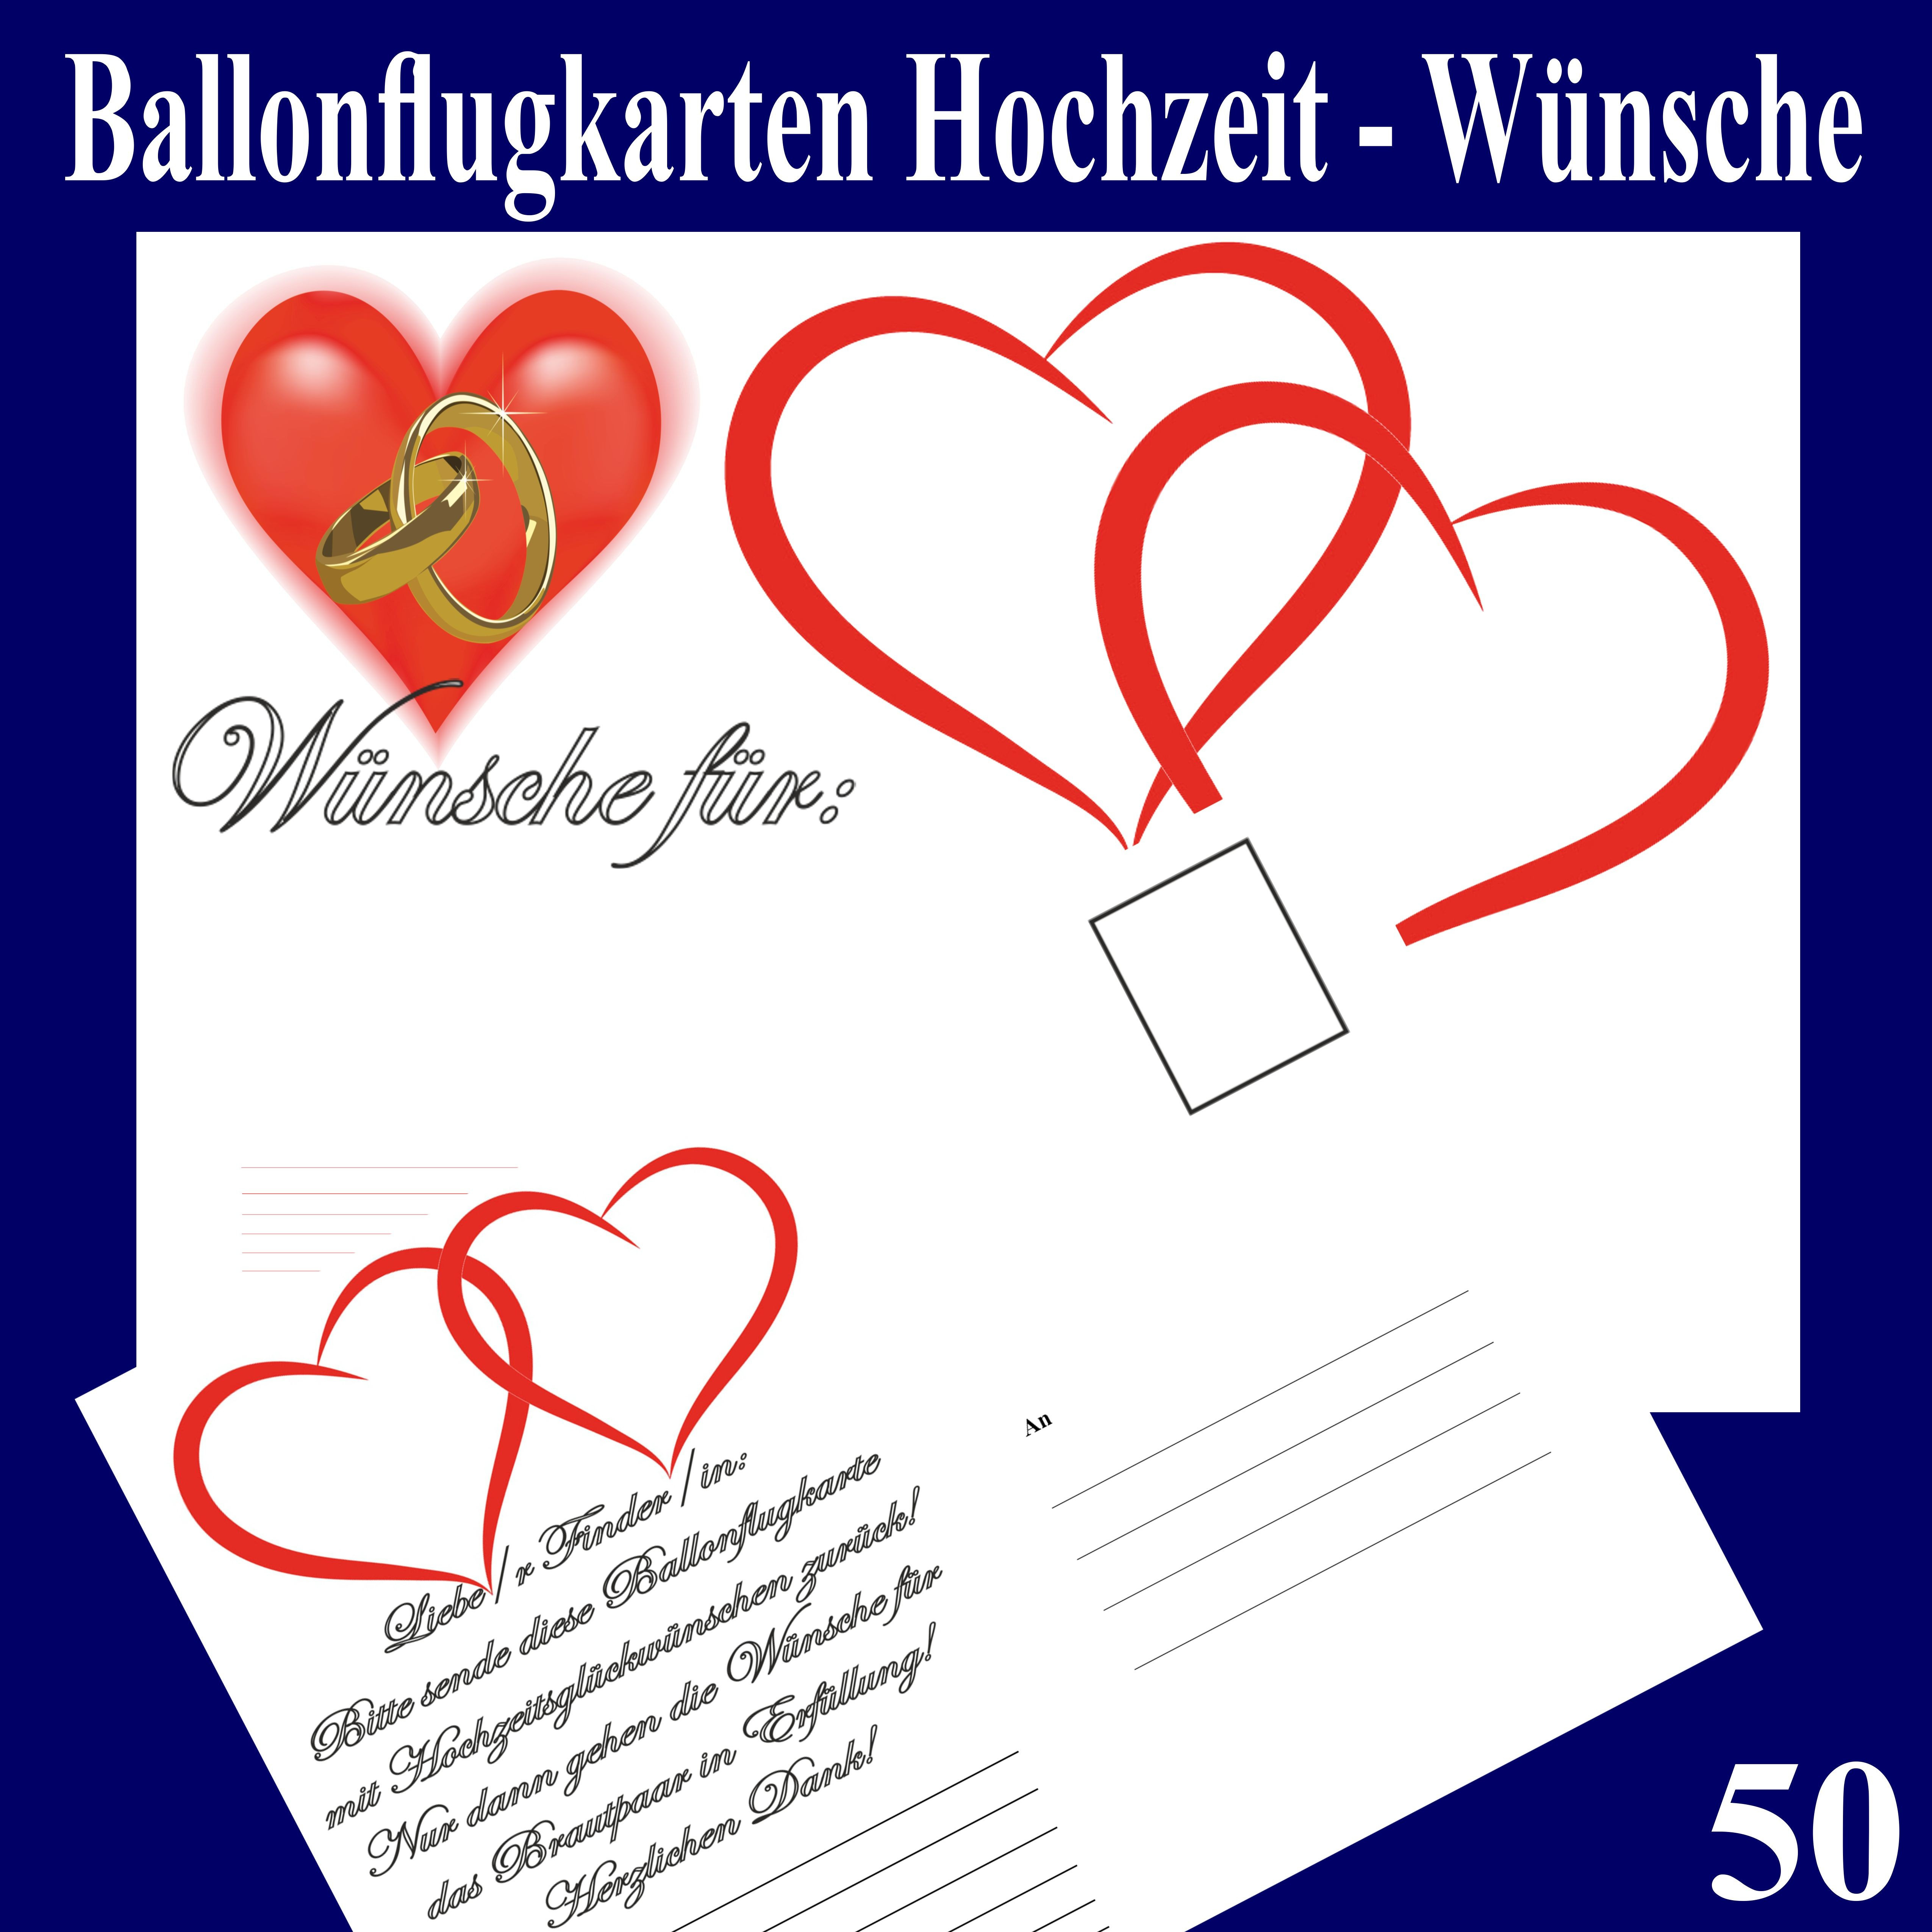 Hochzeitswünsche Für Karte
 Ballonsupermarkt lineshop Ballonflugkarten Hochzeit